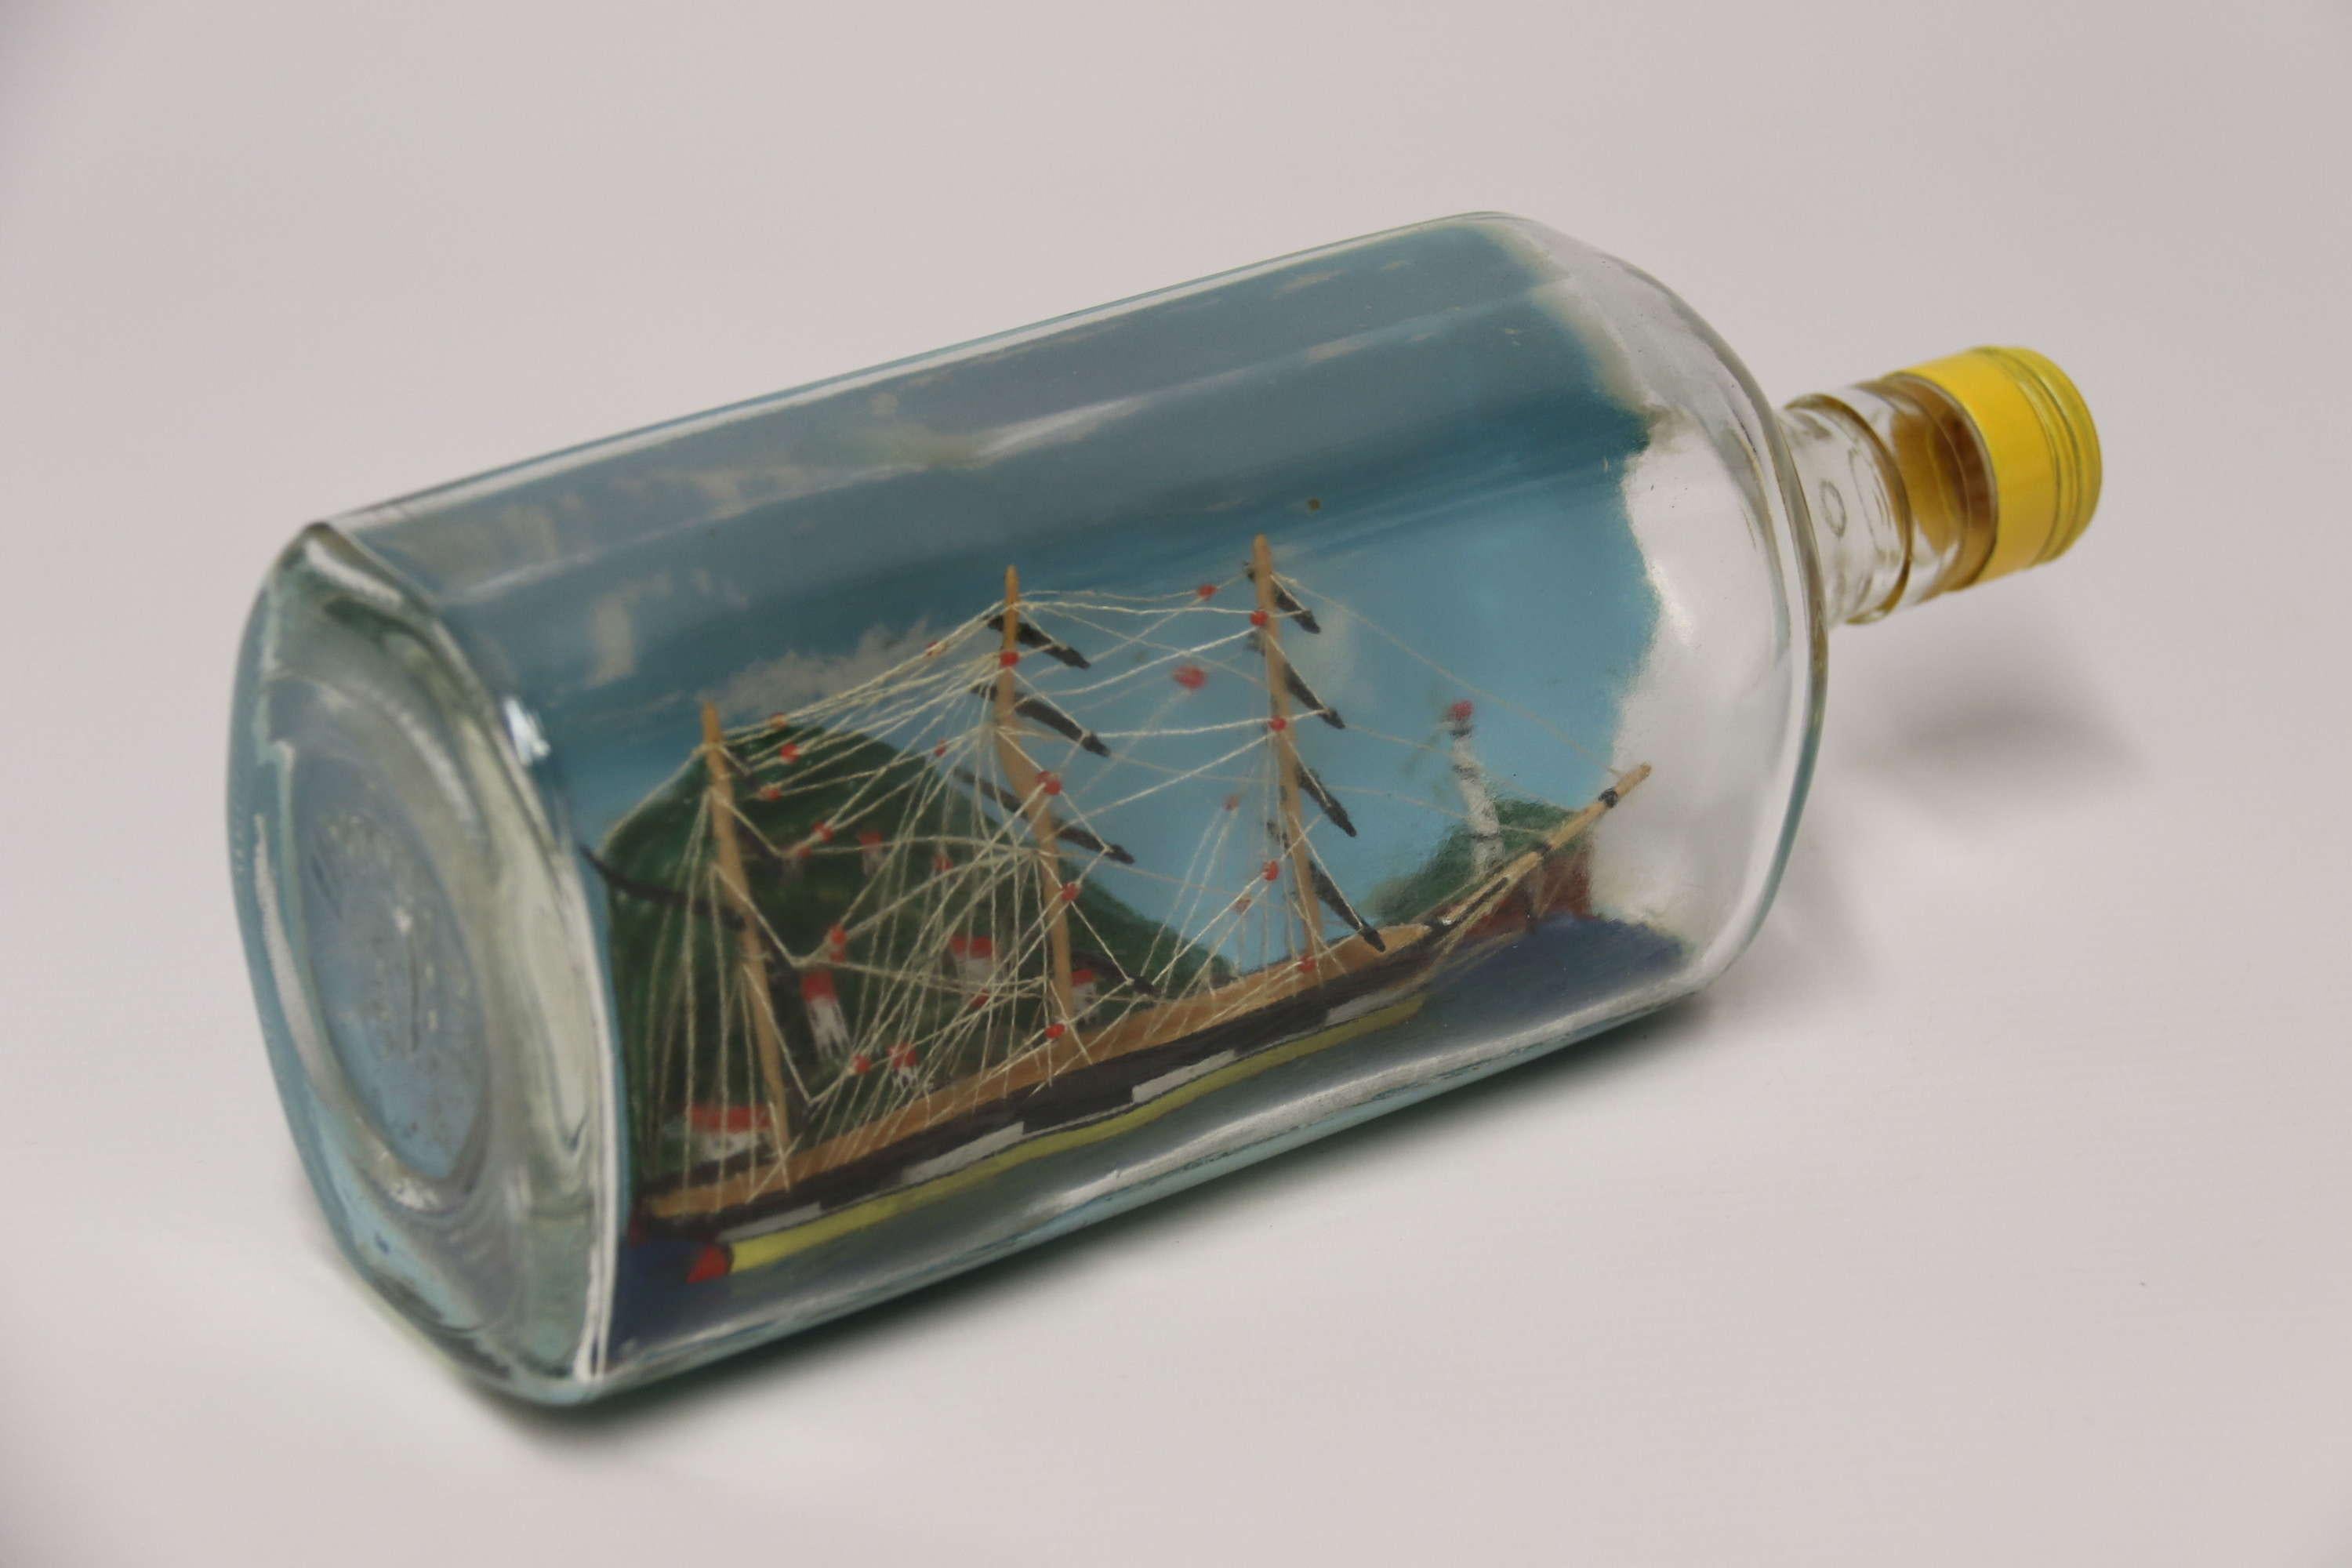 Ein feines Diorama Volkskunst Modell Schiff in einer Flasche

Dieses kunstvoll gefertigte Diorama zeigt ein dreimastiges Segelschiff aus dem frühen 19. Jahrhundert im Hafen, dahinter eine erhöhte Landschaft mit in den Hang eingelassenen Häusern